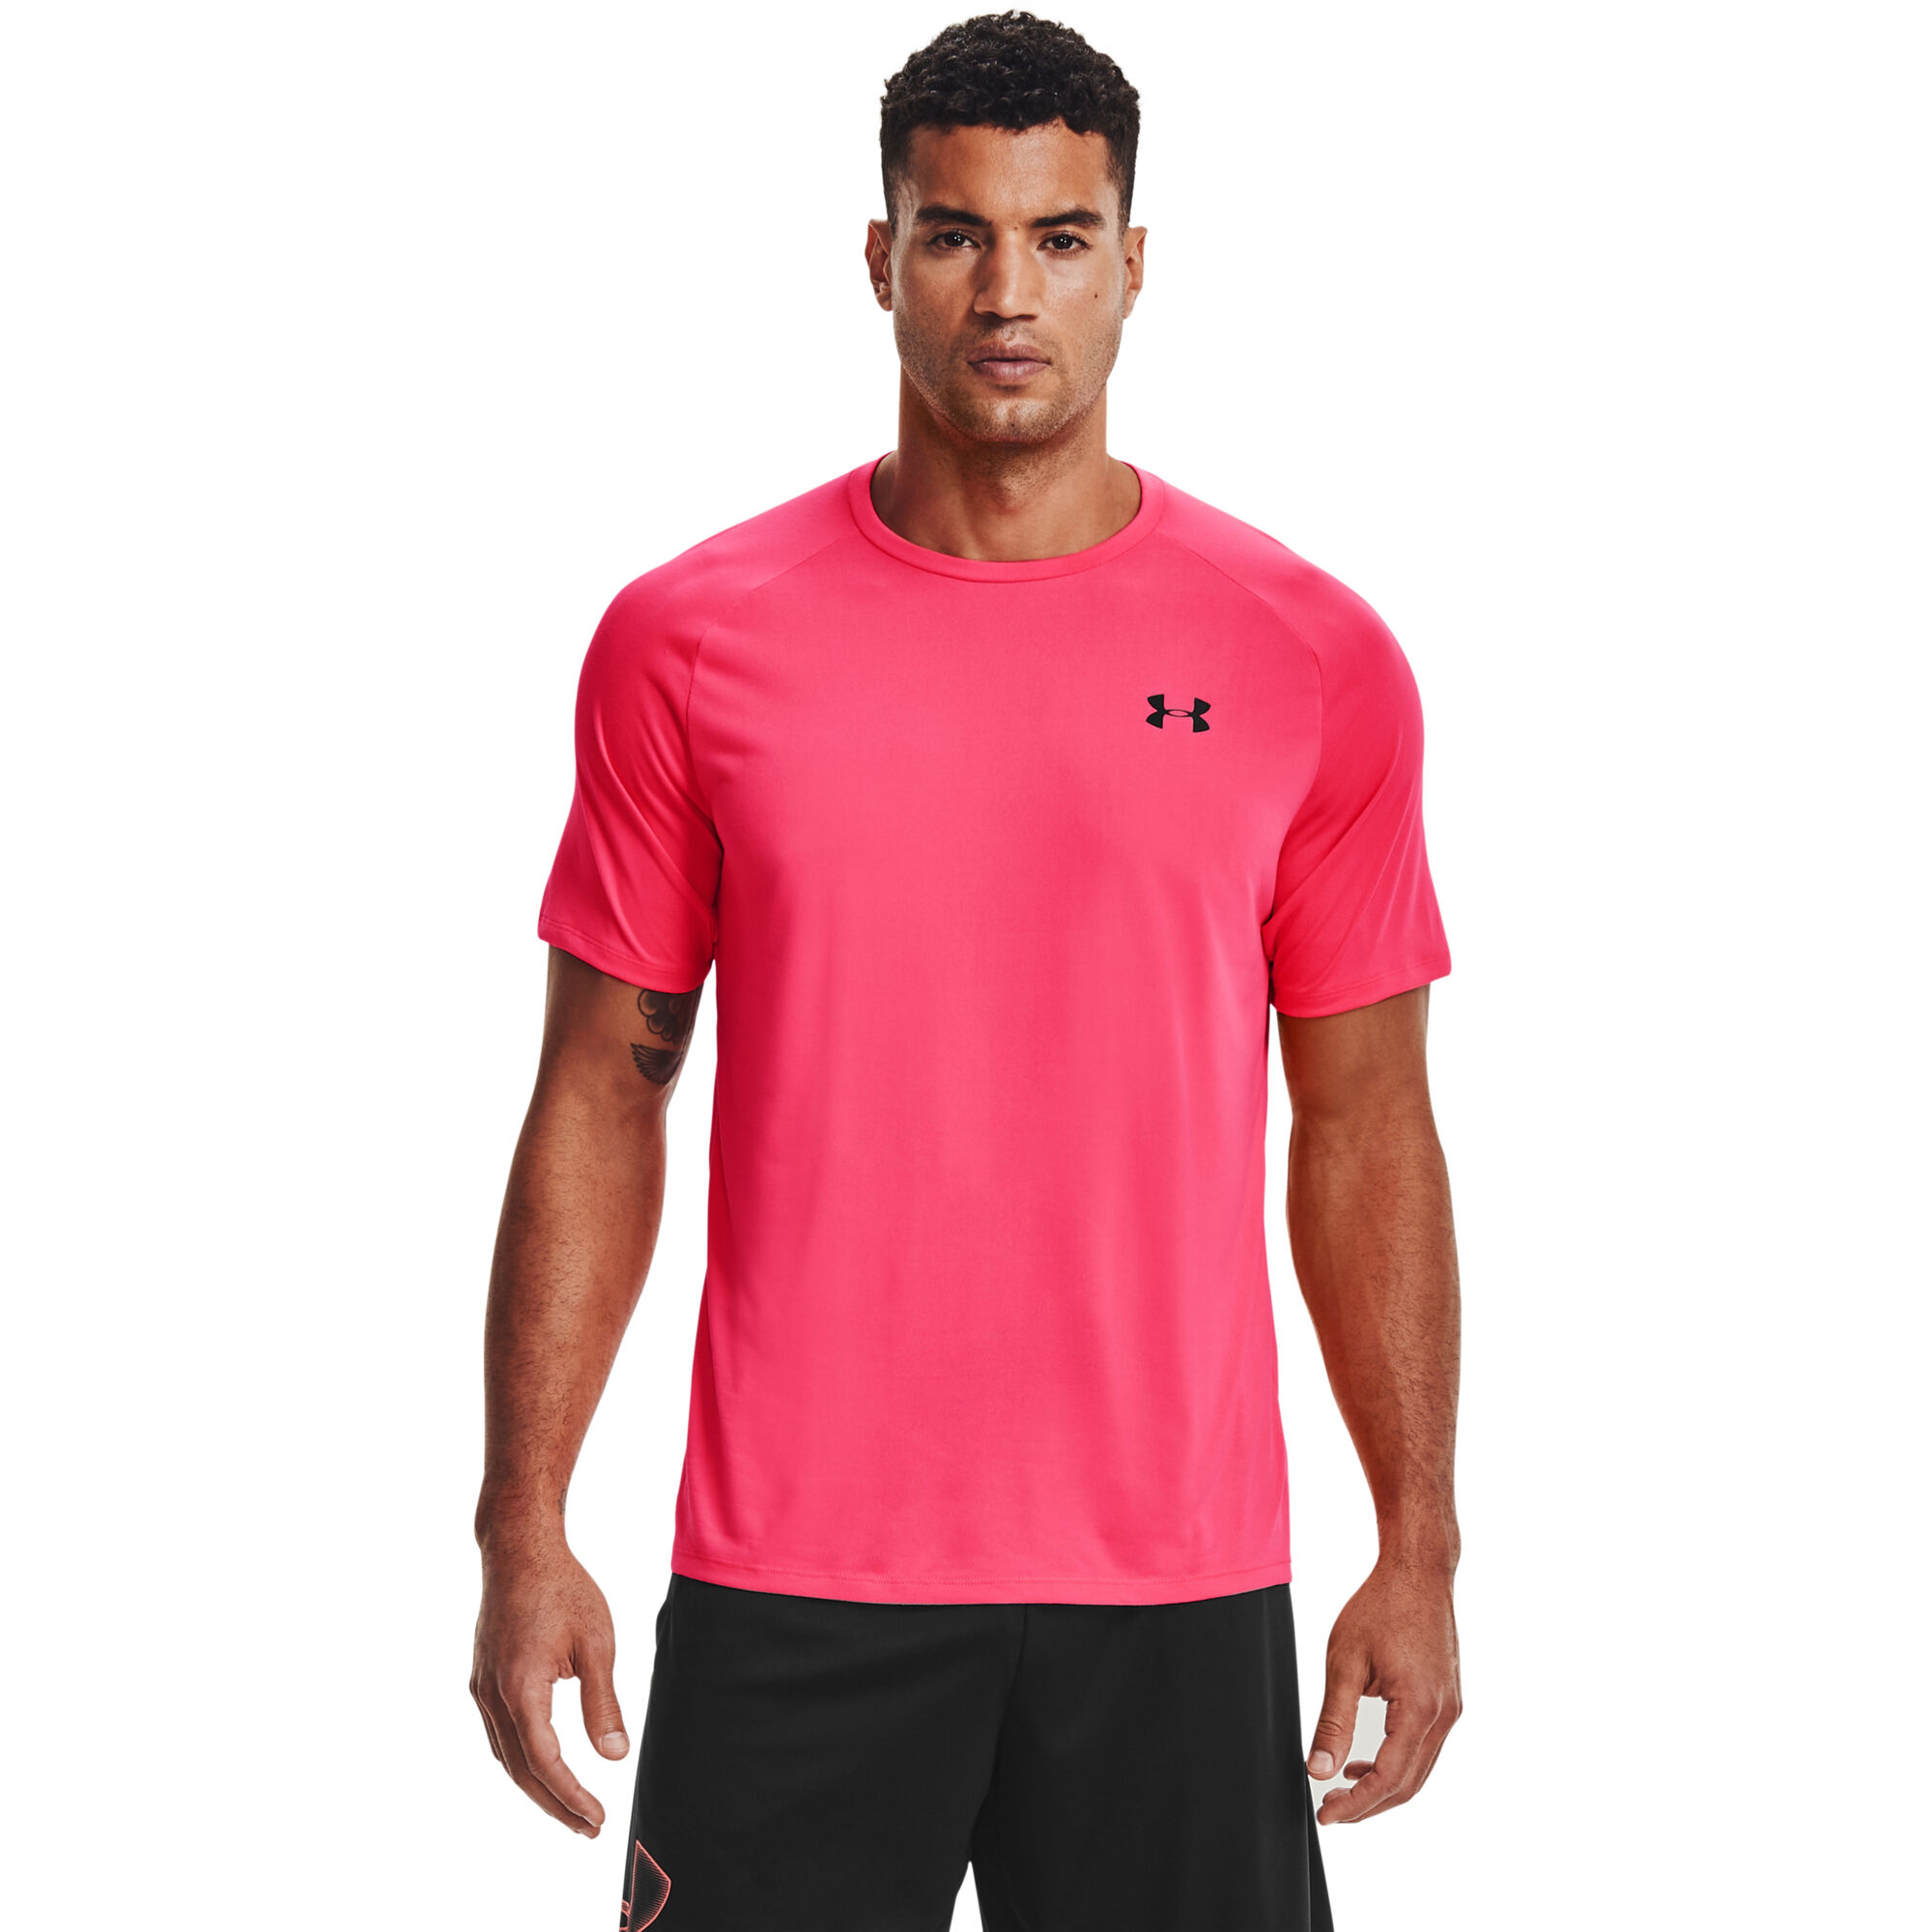 Under Armour Tech 2.0 T-Shirt Herren Pink online kaufen